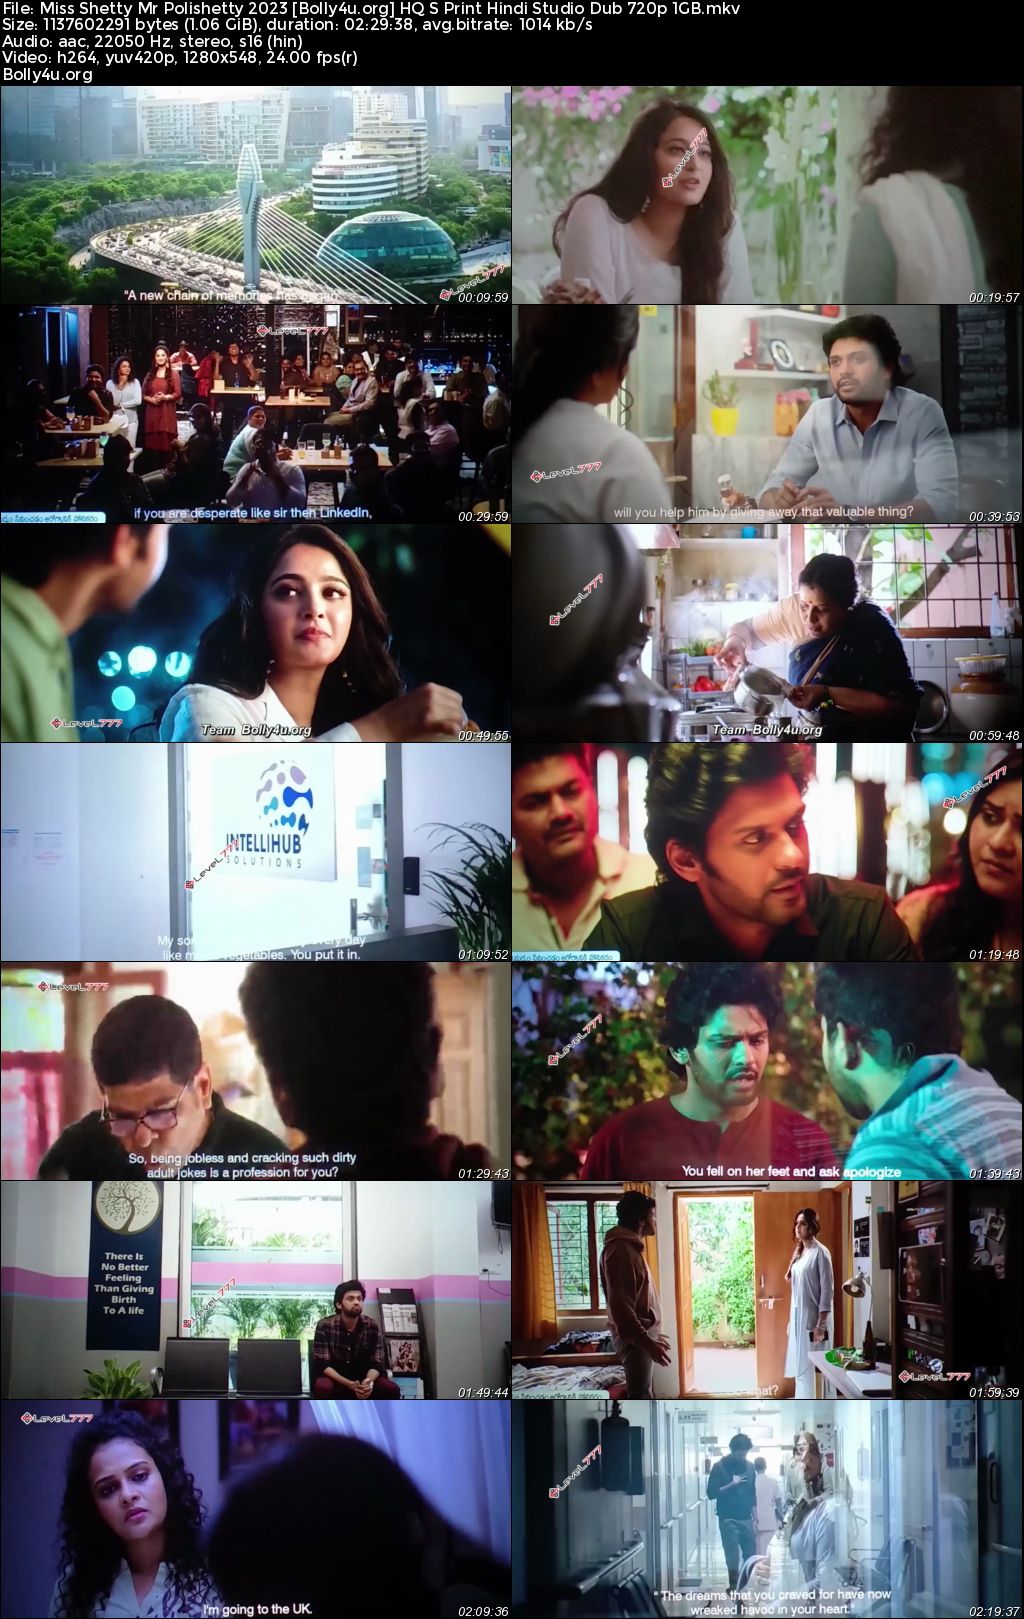 Miss Shetty Mr Polishetty 2023 HQ S Print Hindi (Studio Dub) Full Movie Download 1080p 720p 480p